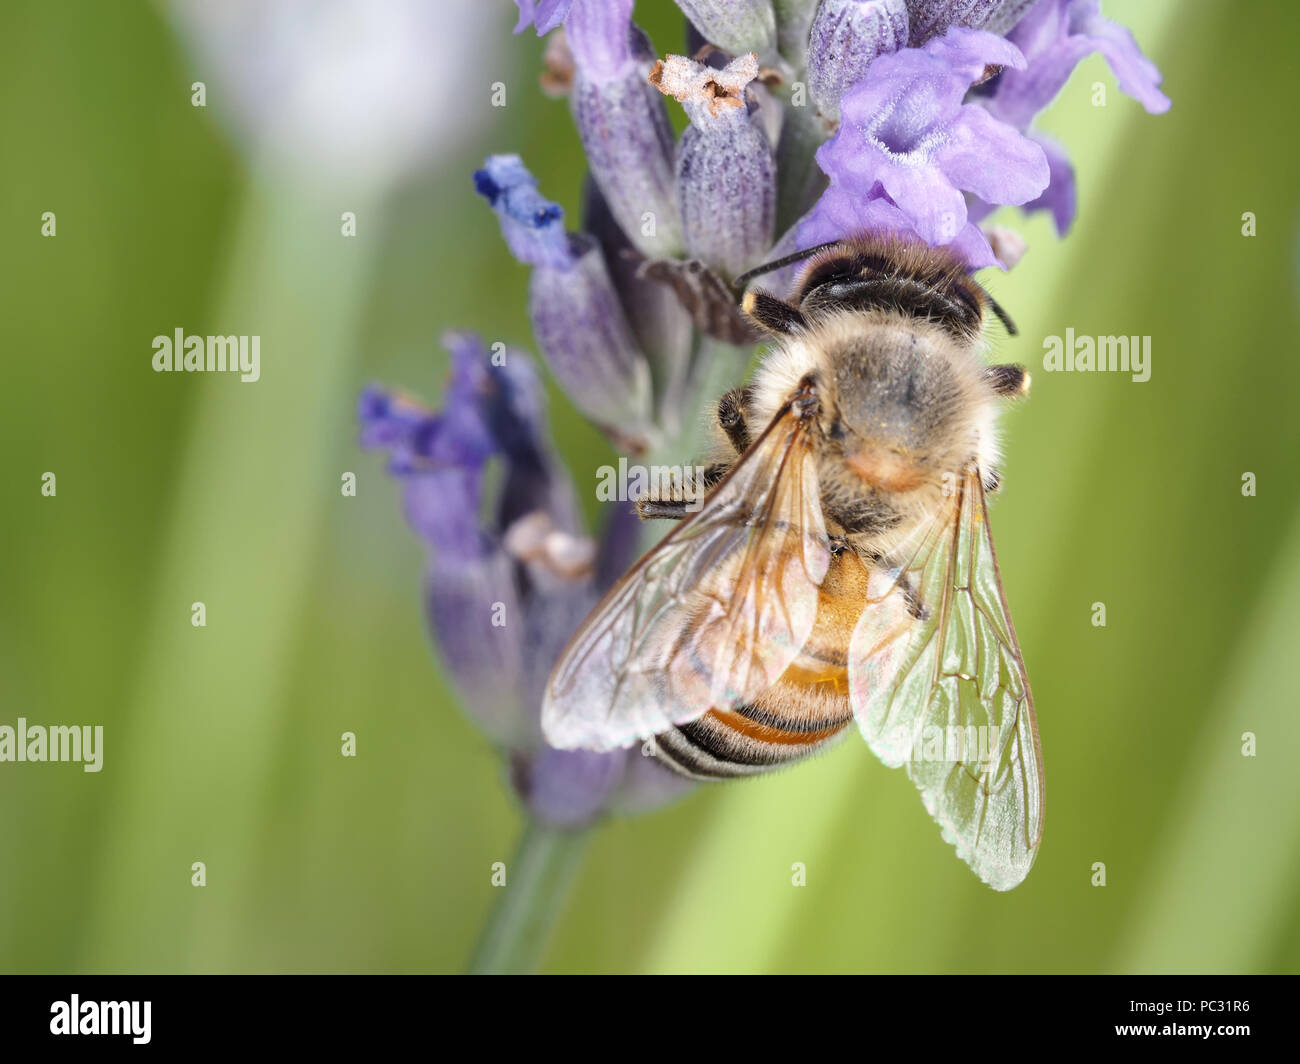 Abeille à miel (Apis mellifera) collecte de nectar des fleurs de lavande Banque D'Images